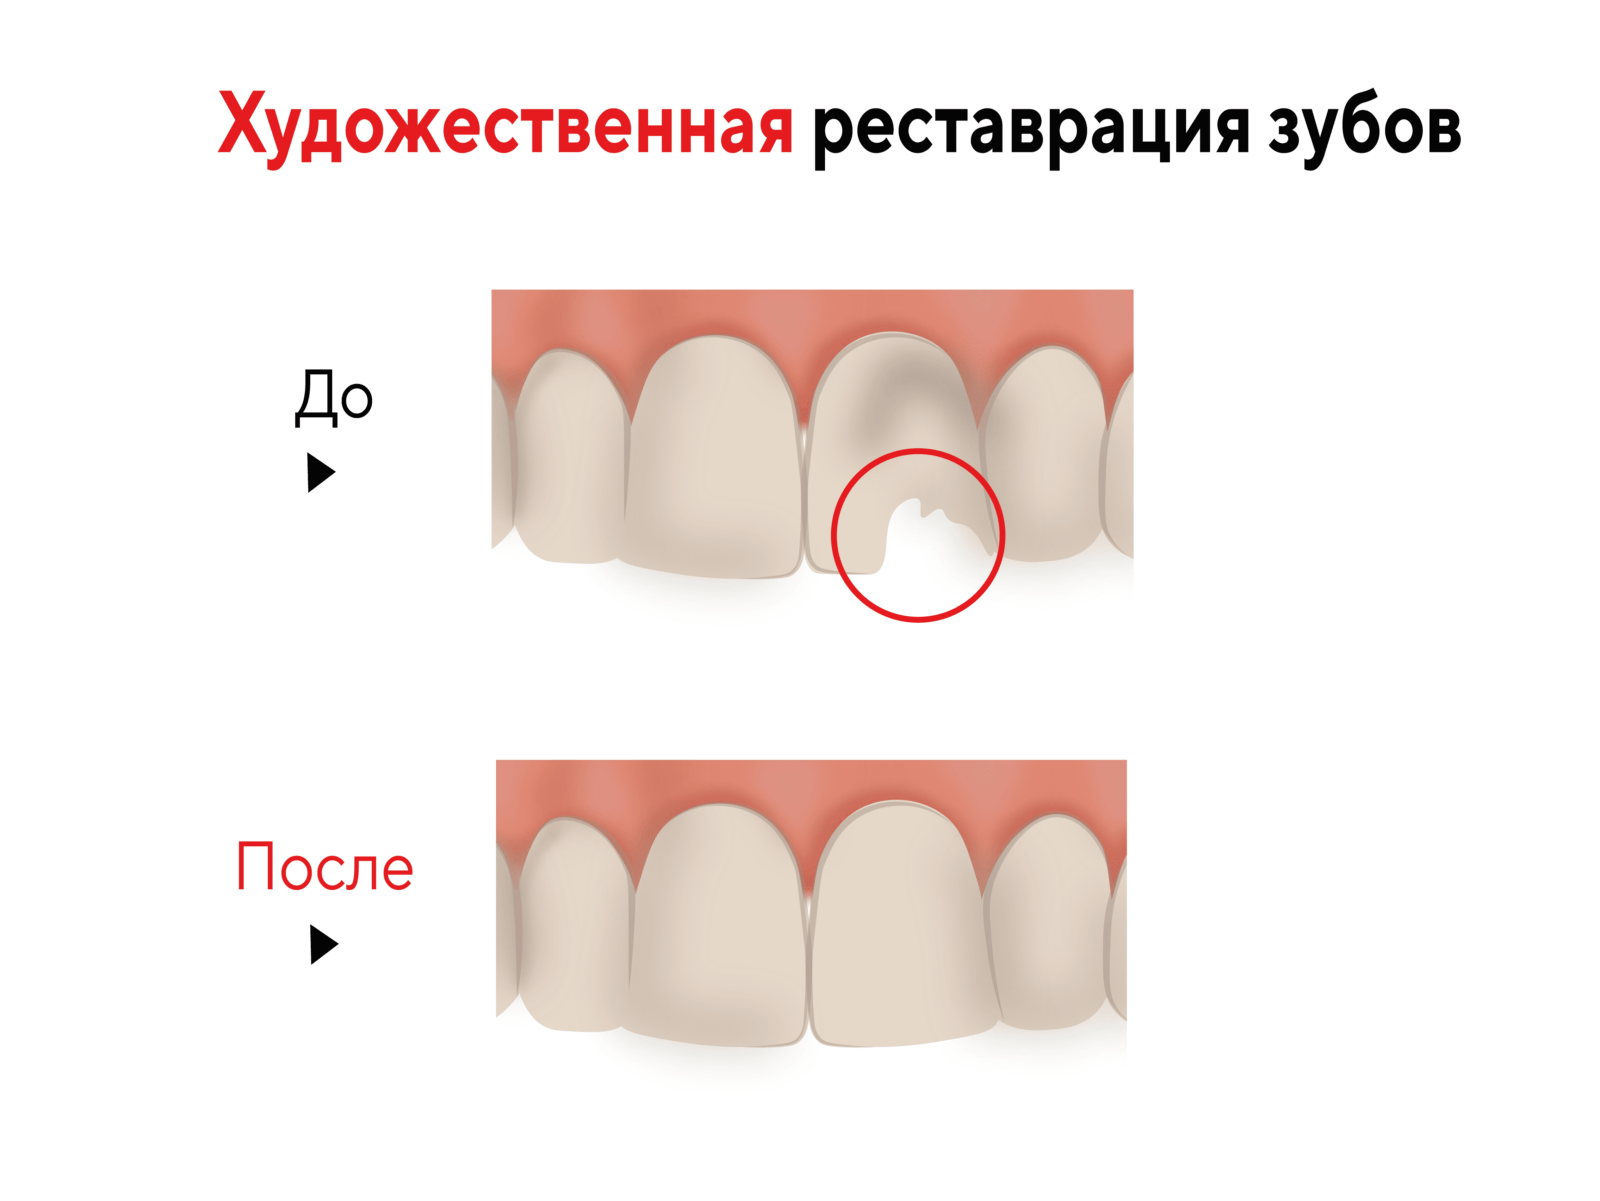 Художественная реставрация зубов в Москве